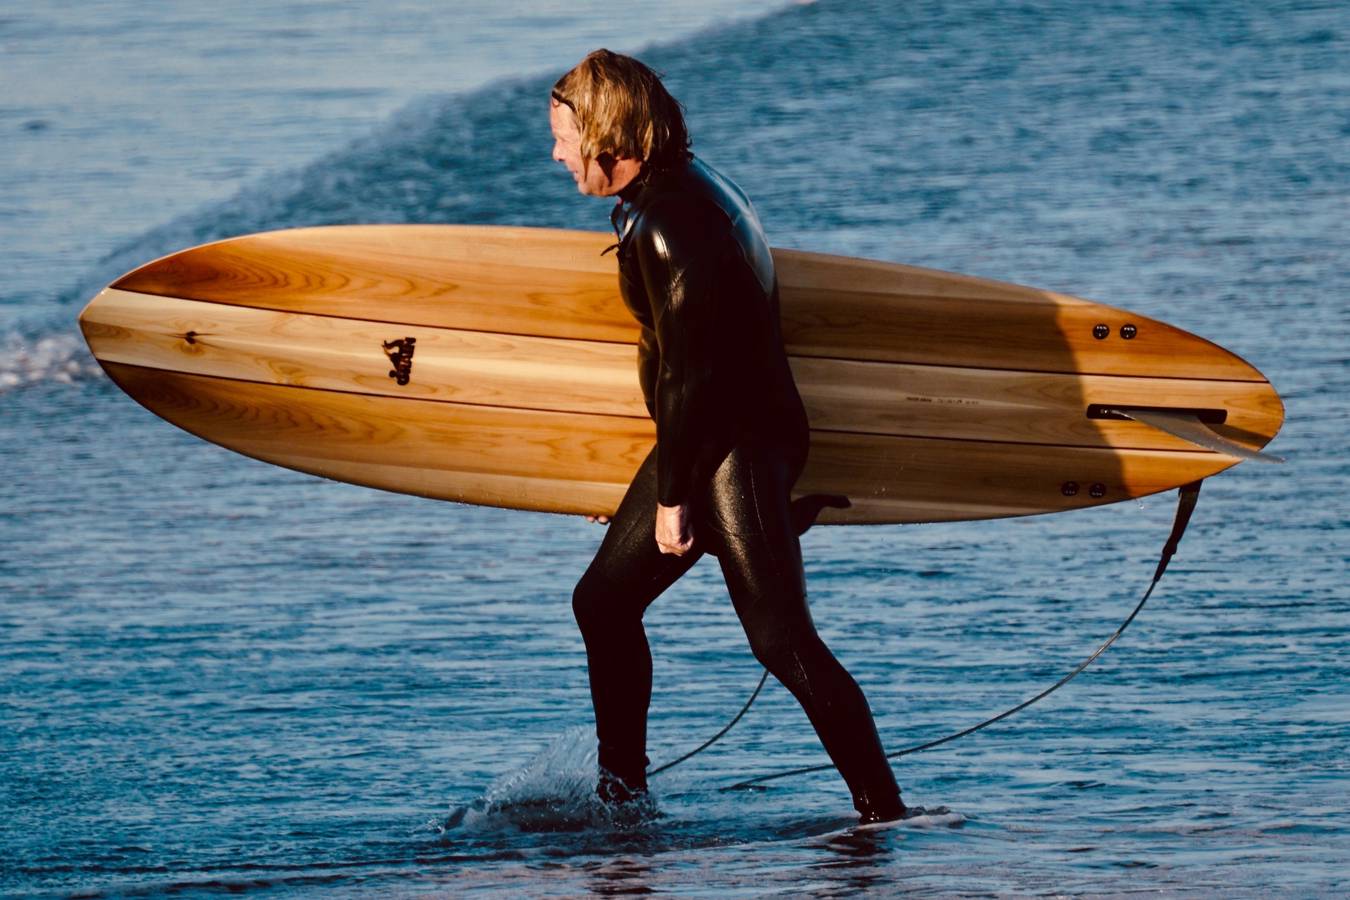 Sapling hollow wooden surfboard